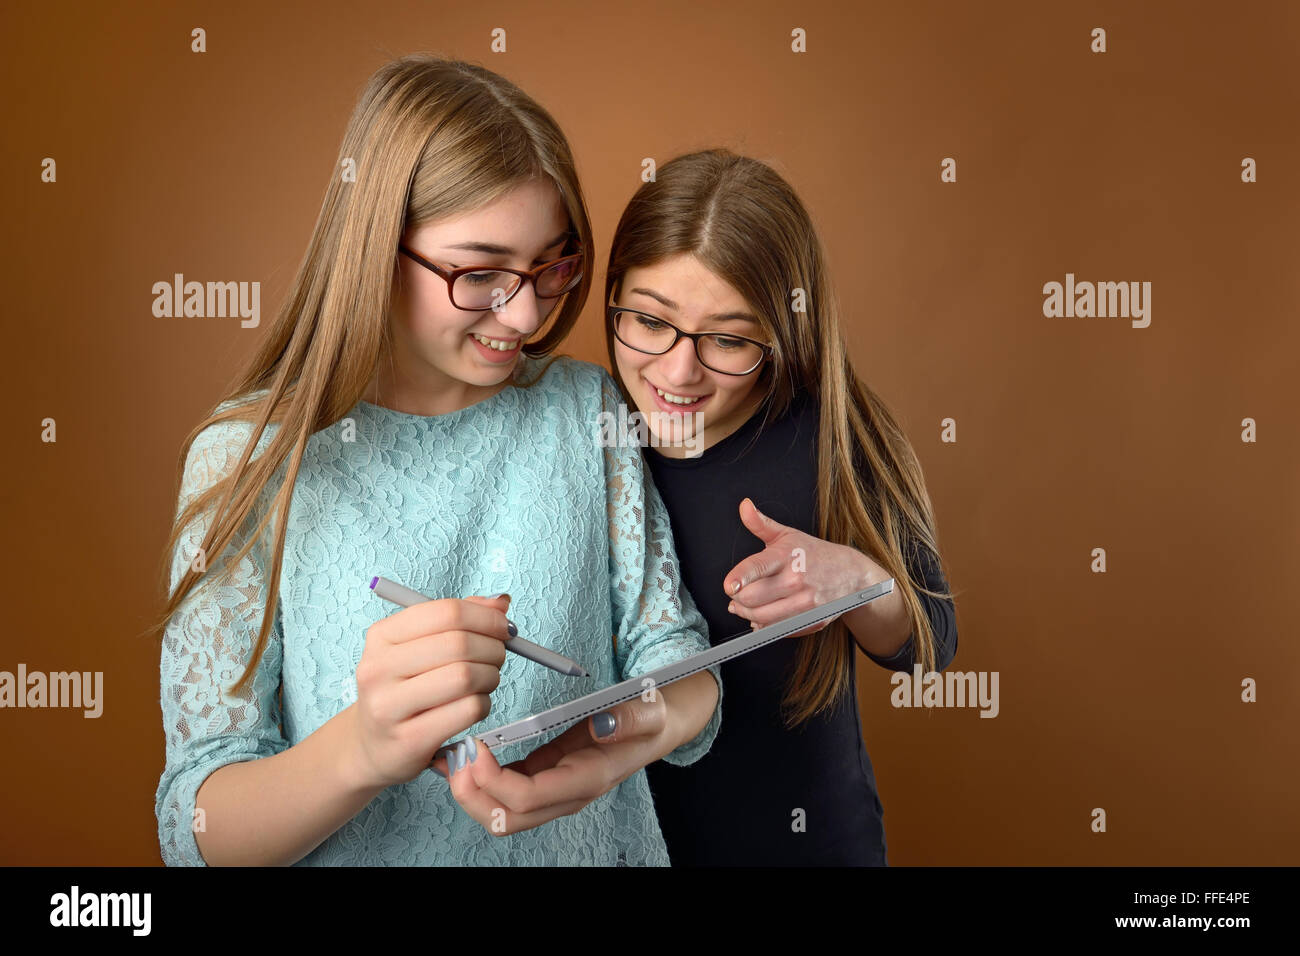 Deux jeunes amis de l'adolescence à l'aide d'un ordinateur Tablet Banque D'Images